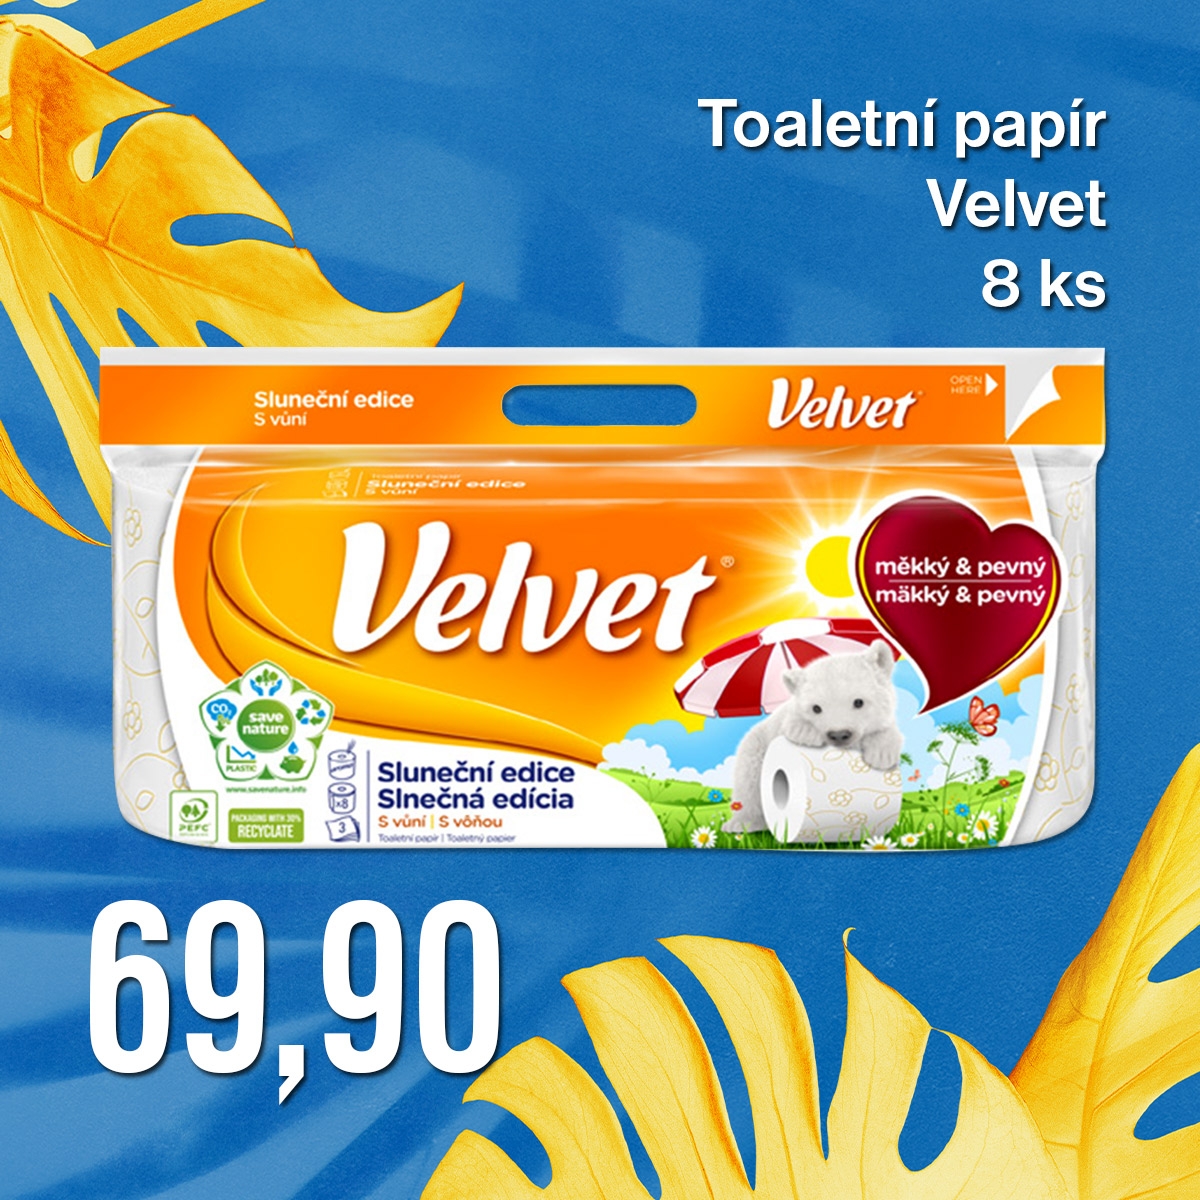 Toaletní papír Velvet Sluneční edice 8 ks